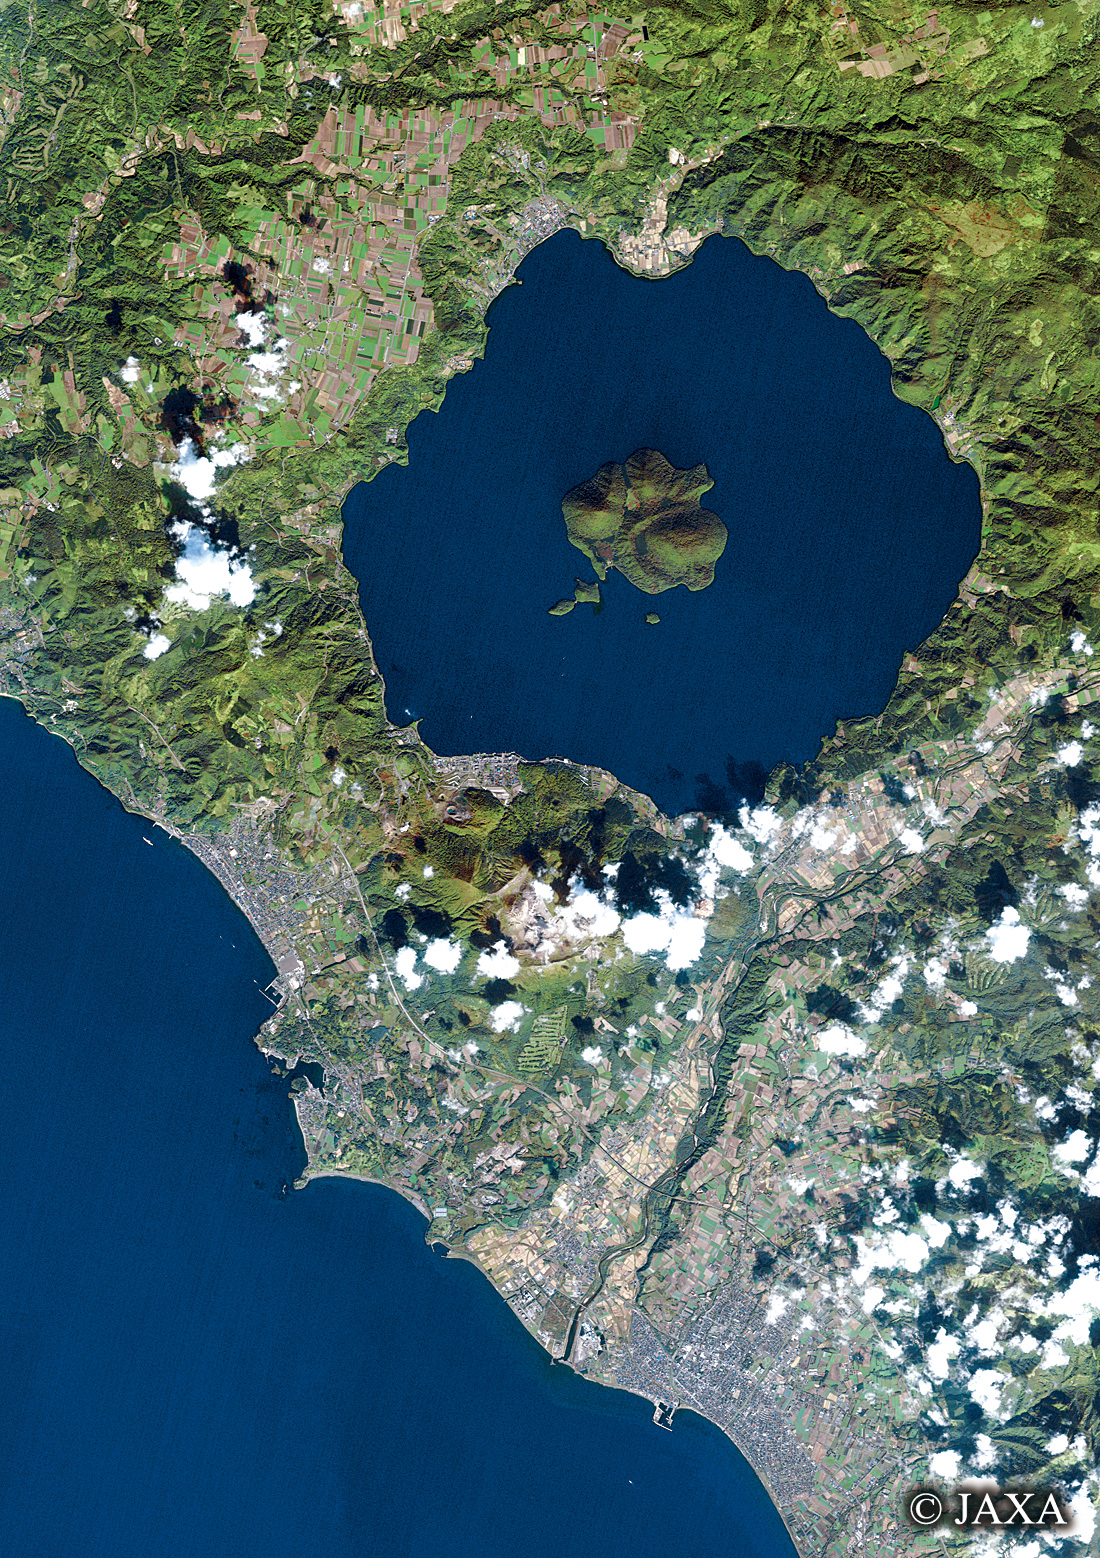 だいちから見た日本の都市 秋の洞爺湖と周辺地域:衛星画像